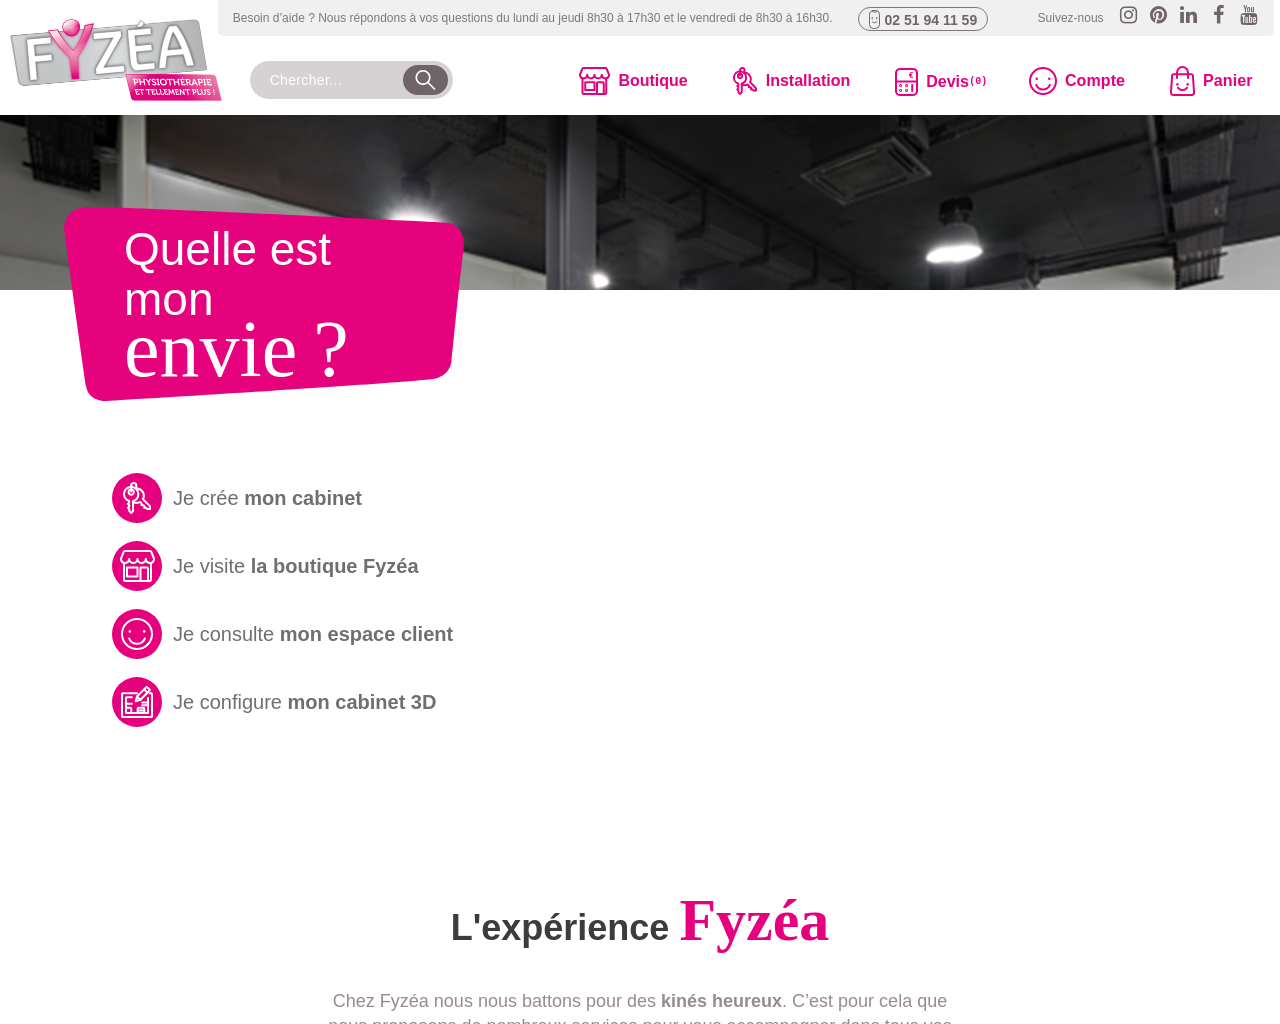 www.fyzea.fr